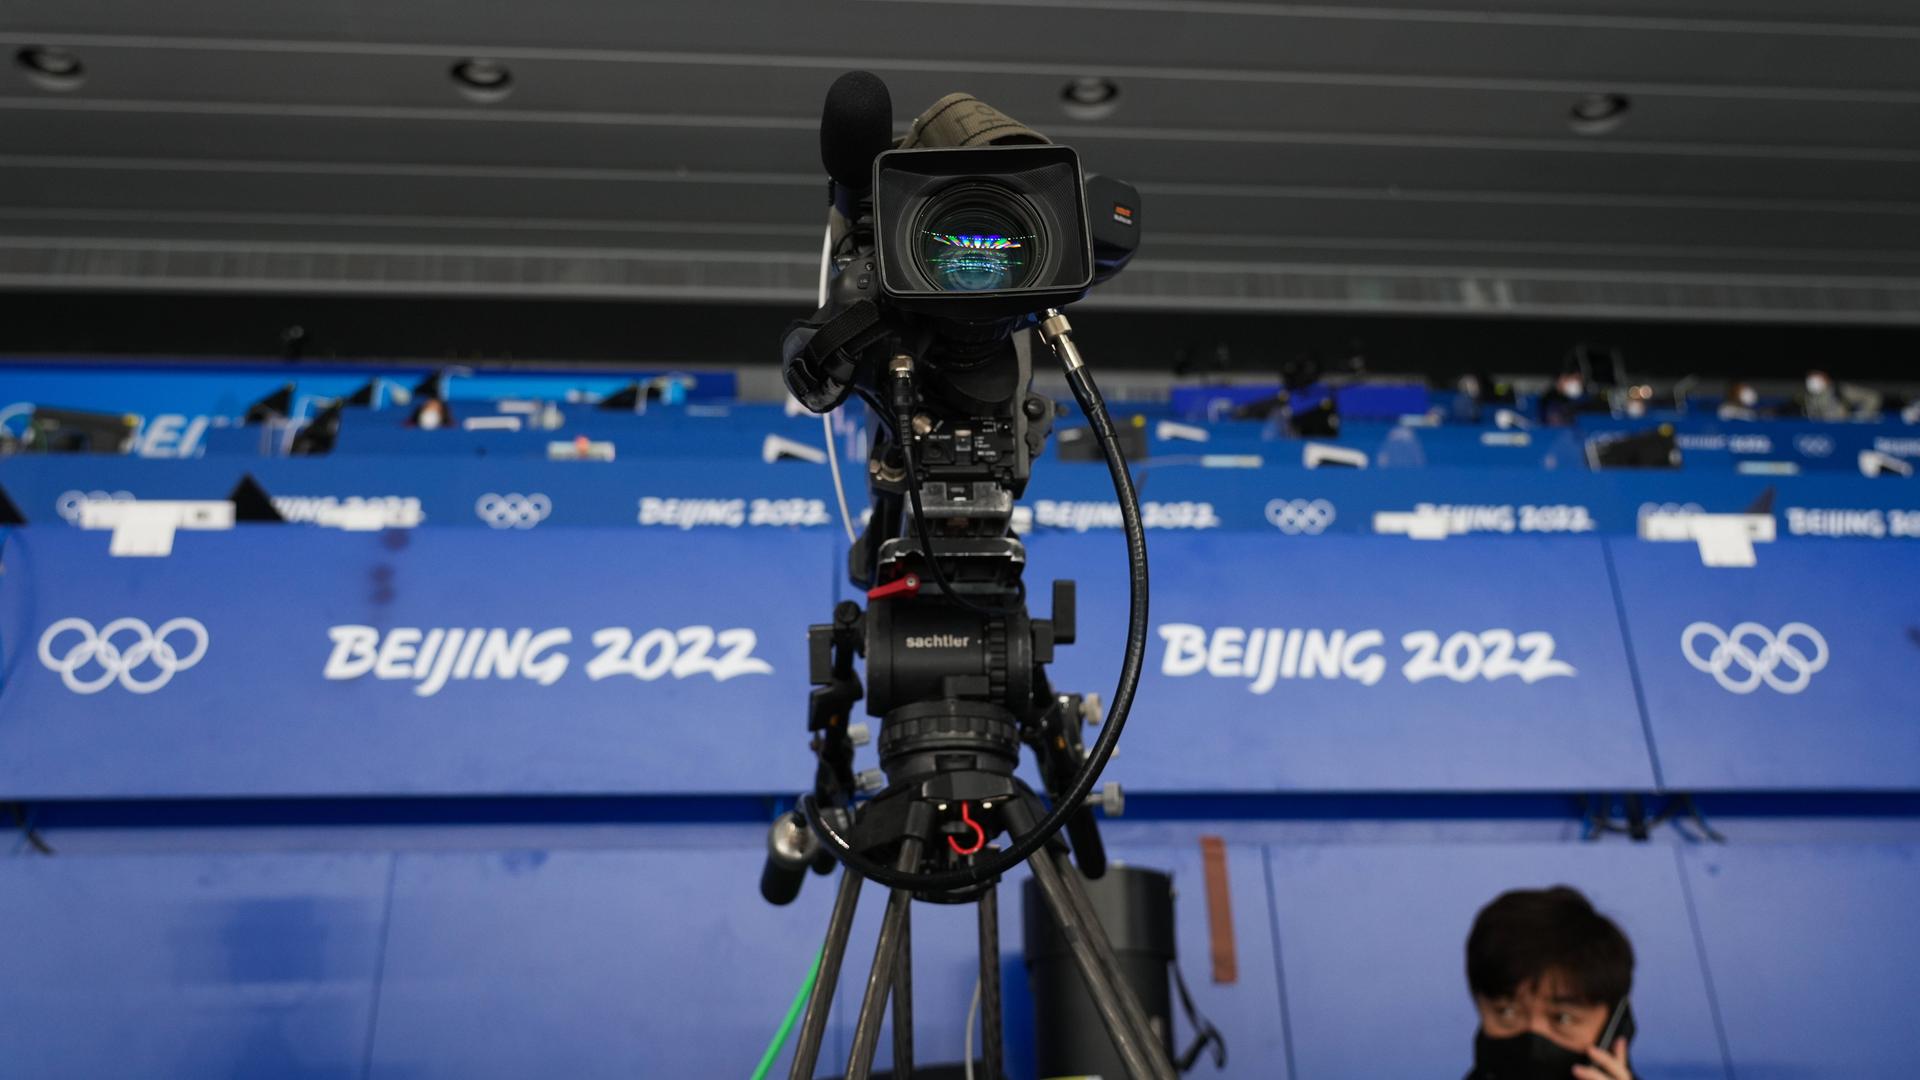 Eine Fernsehkamera steht vor den Logos der Olympischen Winterspiele von Peking 2022